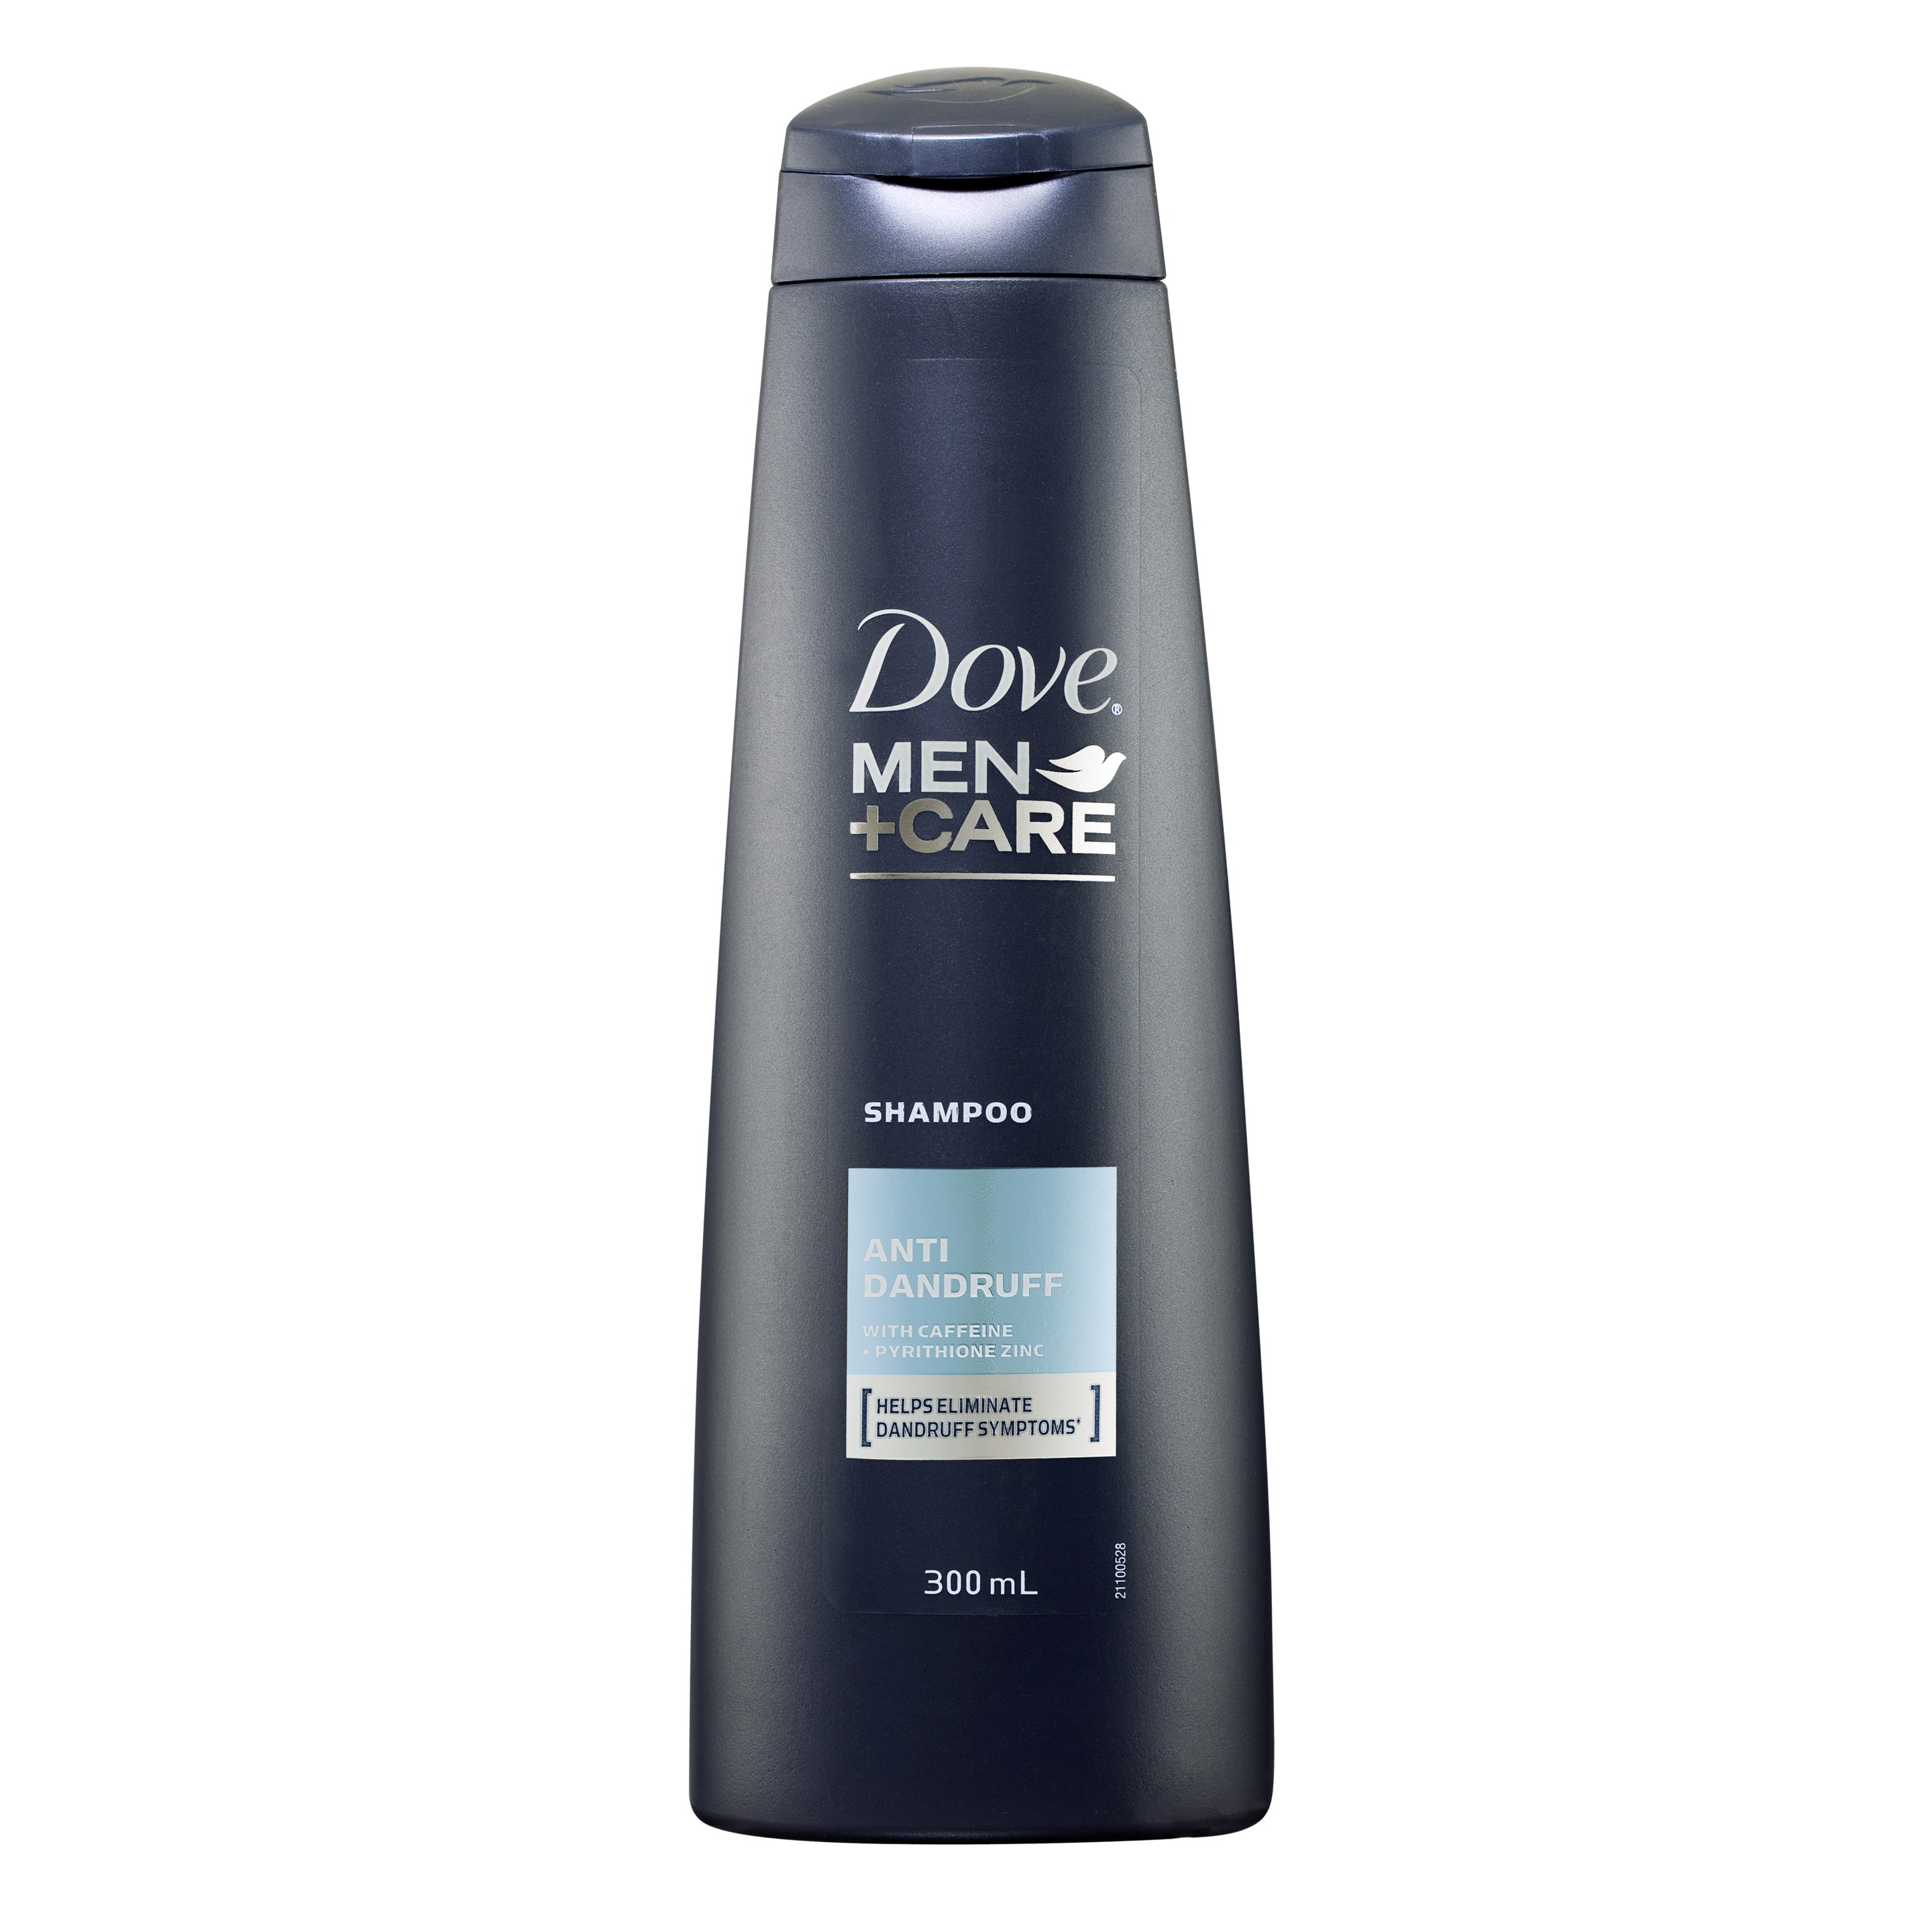 Dove Men+Care Anti Dandruff Shampoo 300ml Text